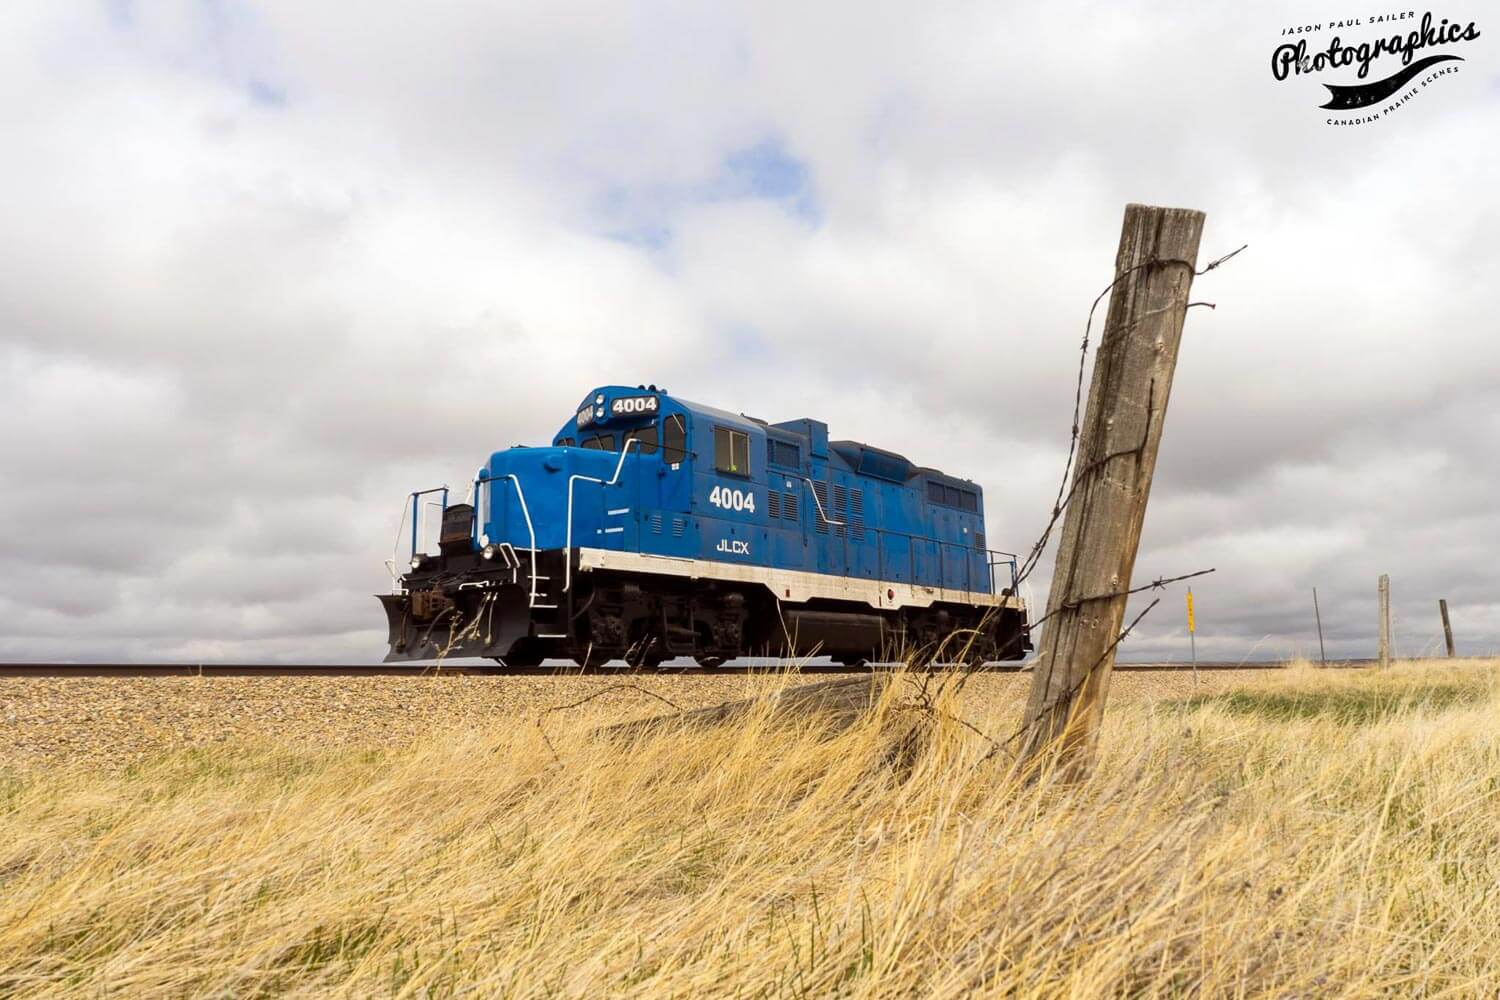 Blue train engine driving through the prairies